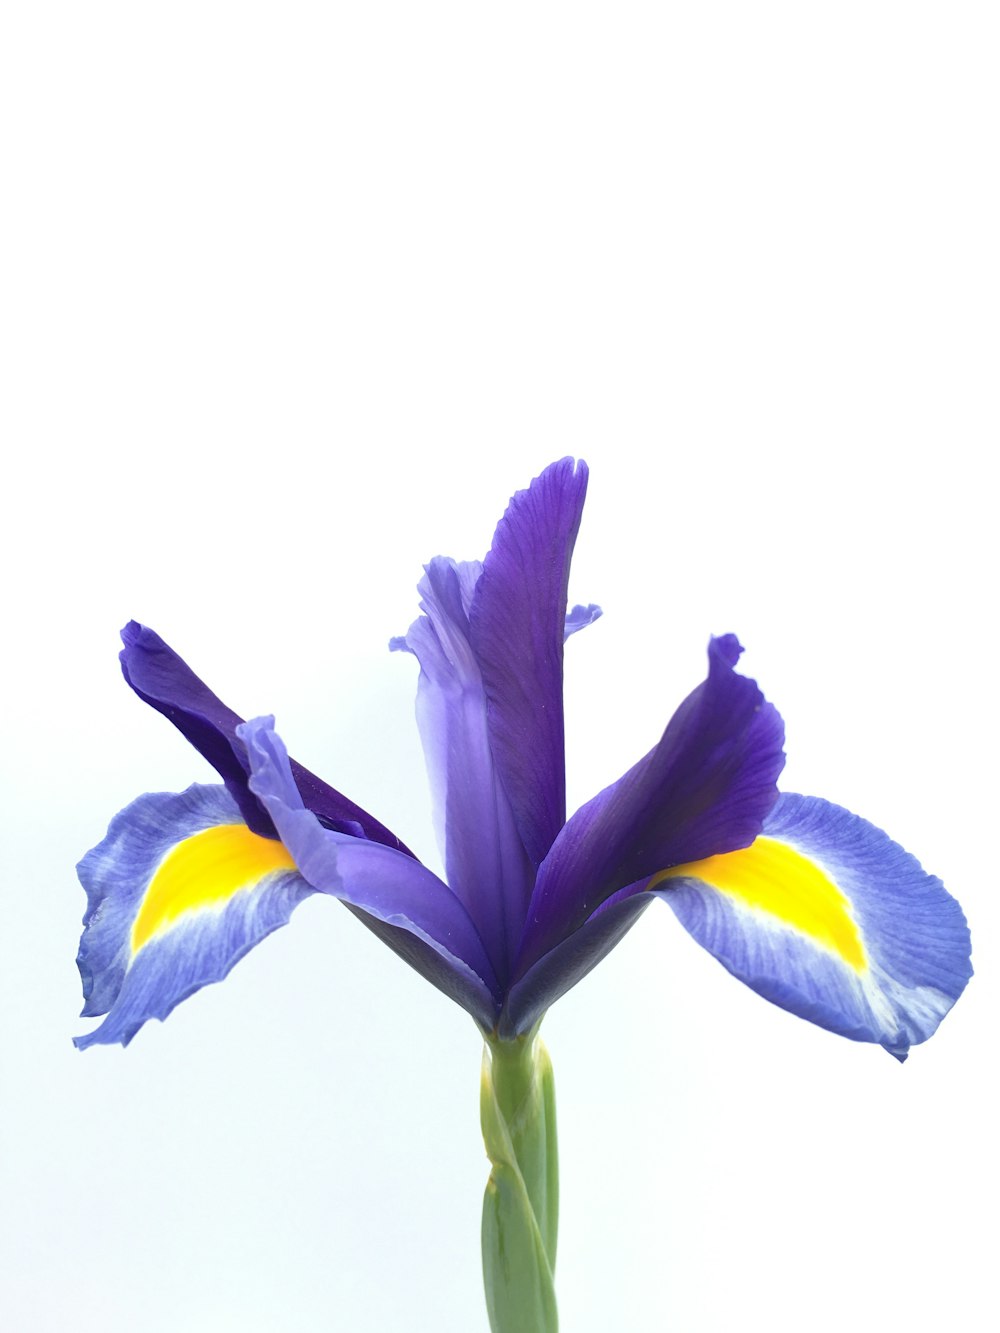 999+ imágenes de flores de iris | Descargar imágenes gratis en Unsplash